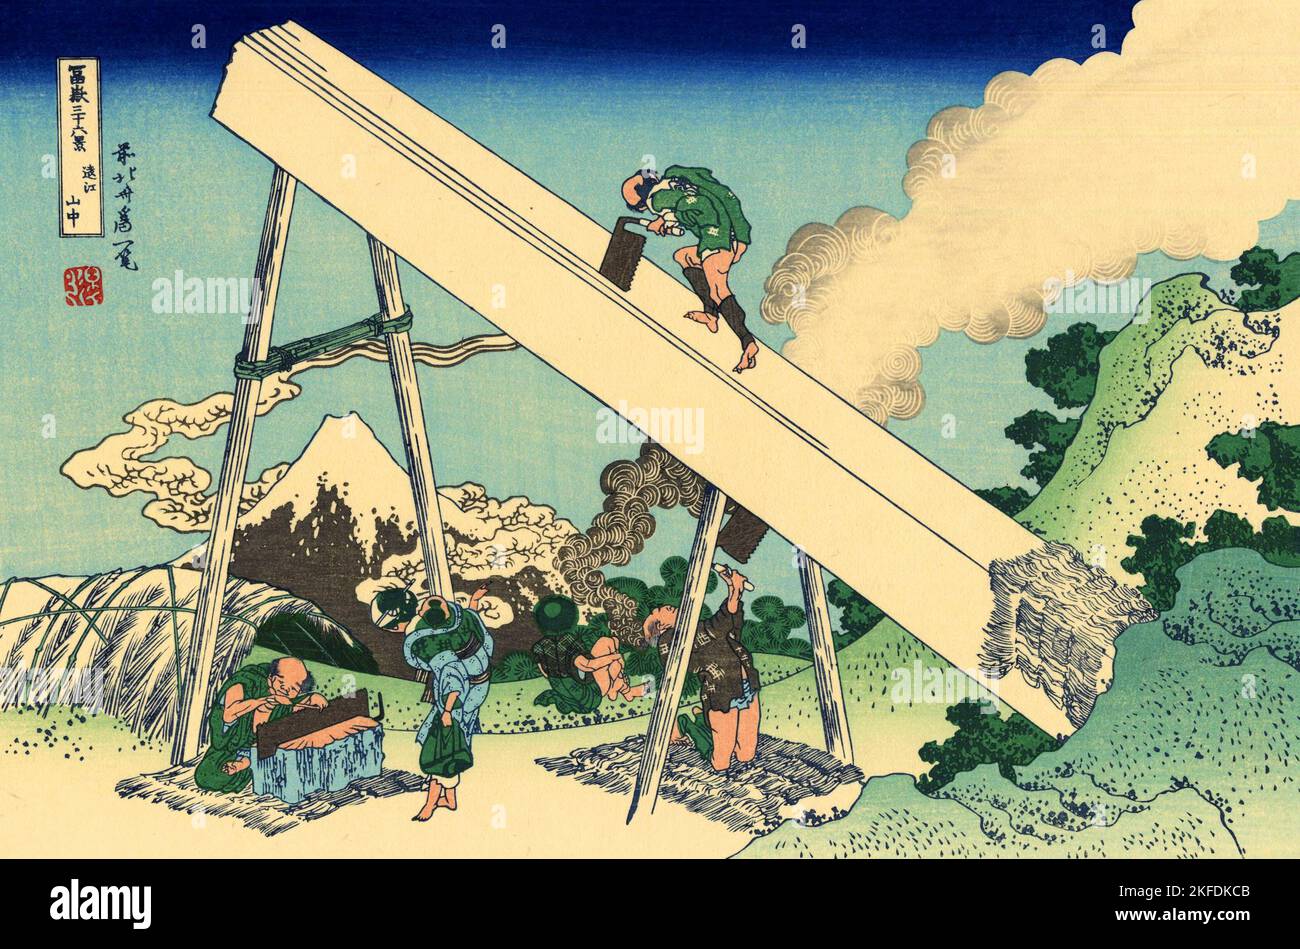 Japón: «En las montañas de Totomi». Impresión en bloque de madera ukiyo-e de la serie «Treinta y seis vistas del monte Fuji» de Katsushika Hokusai (31 de octubre de 1760 - 10 de mayo de 1849), c. 1830. «36 Vistas del Monte Fuji» es una serie «ukiyo-e» de grandes grabados en madera del artista Katsushika Hokusai. La serie muestra el Monte Fuji en diferentes estaciones y condiciones climáticas desde diversos lugares y distancias. En realidad consiste en 46 impresiones creadas entre 1826 y 1833. Los primeros 36 fueron incluidos en la publicación original y, debido a su popularidad, 10 más fueron añadidos después de la publicación original. Foto de stock